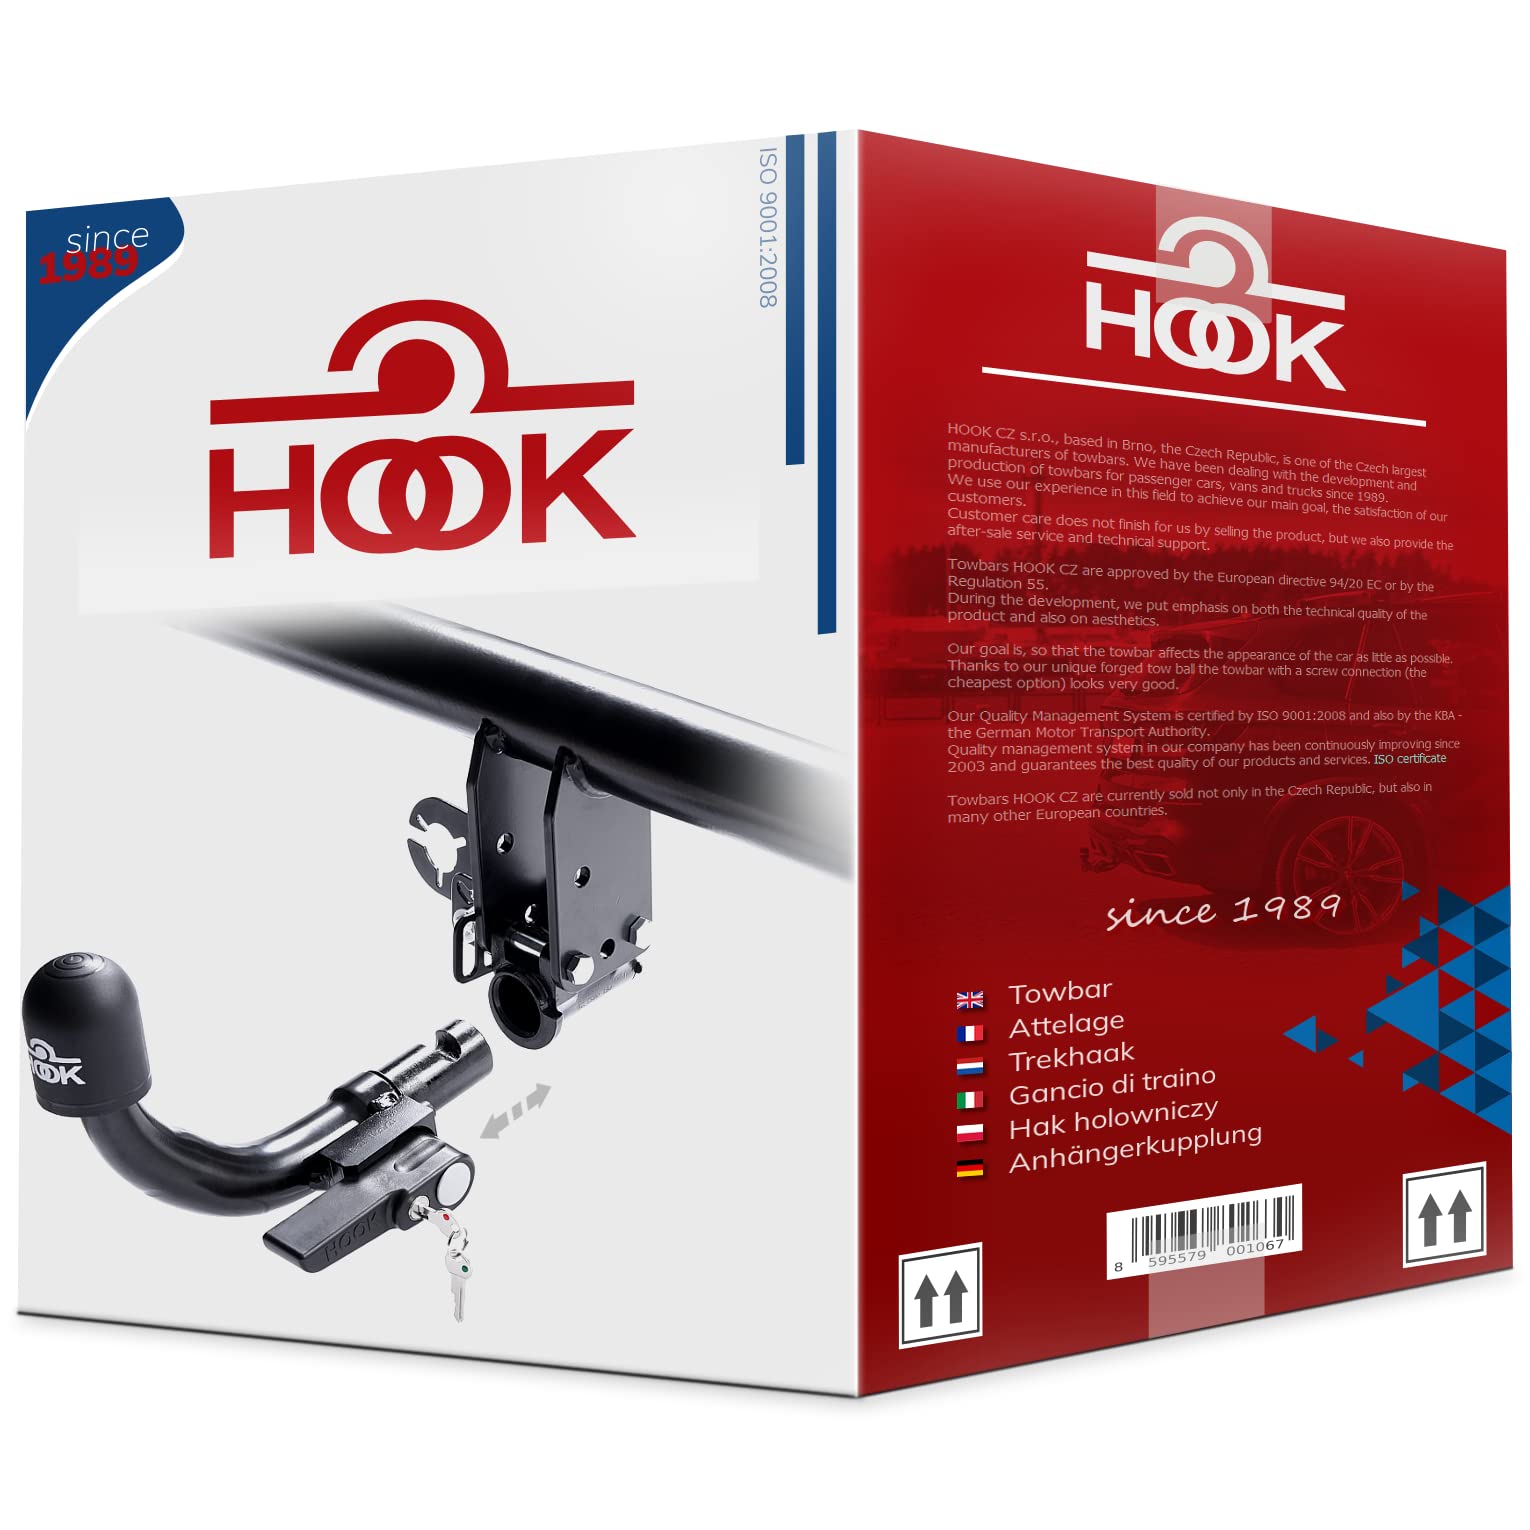 Hook horizontal abnehmbare AHK Anhängerkupplung für Ford Focus C-Max 2003-2010 + universell Elektrosatz 13-polig von Hook